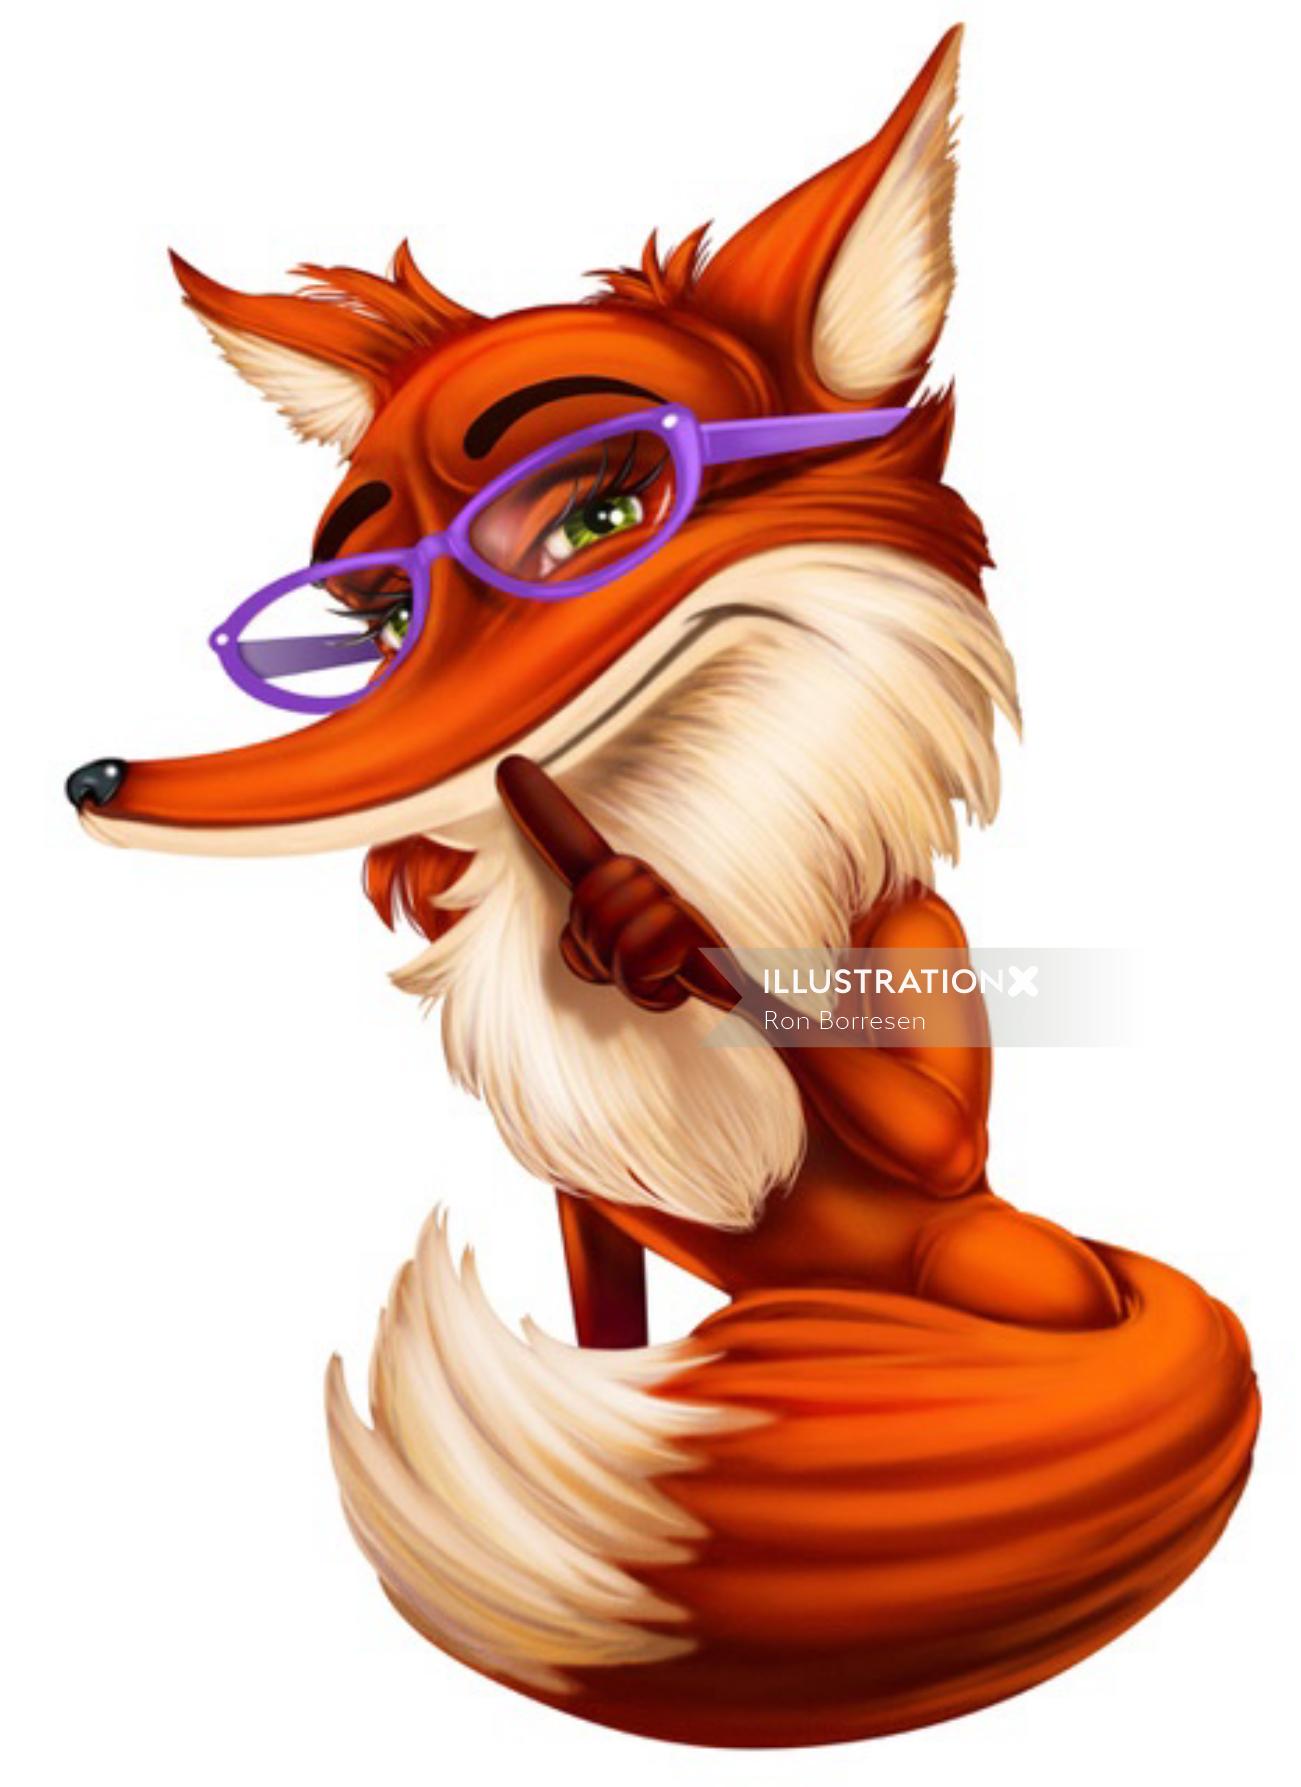 Conception de personnage de renard avec des lunettes violettes